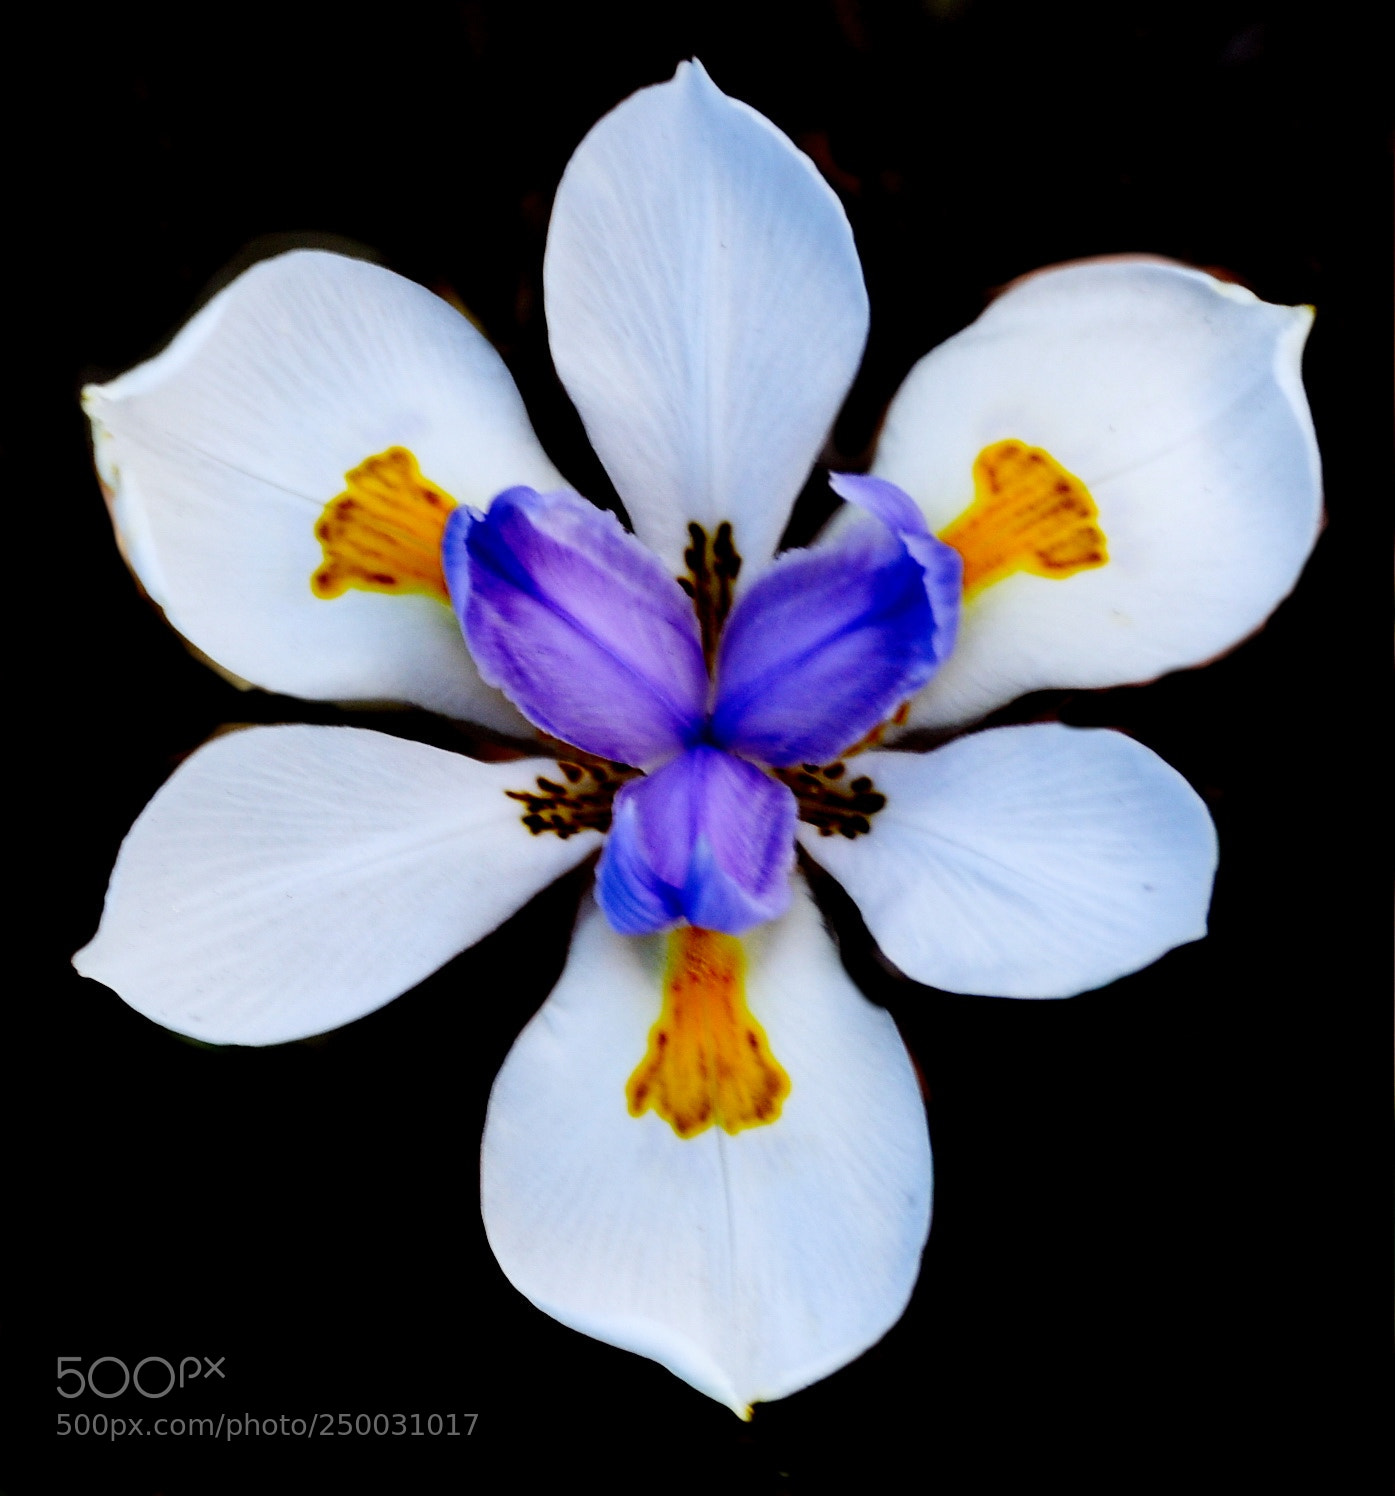 Nikon D7200 sample photo. White iris flower photography